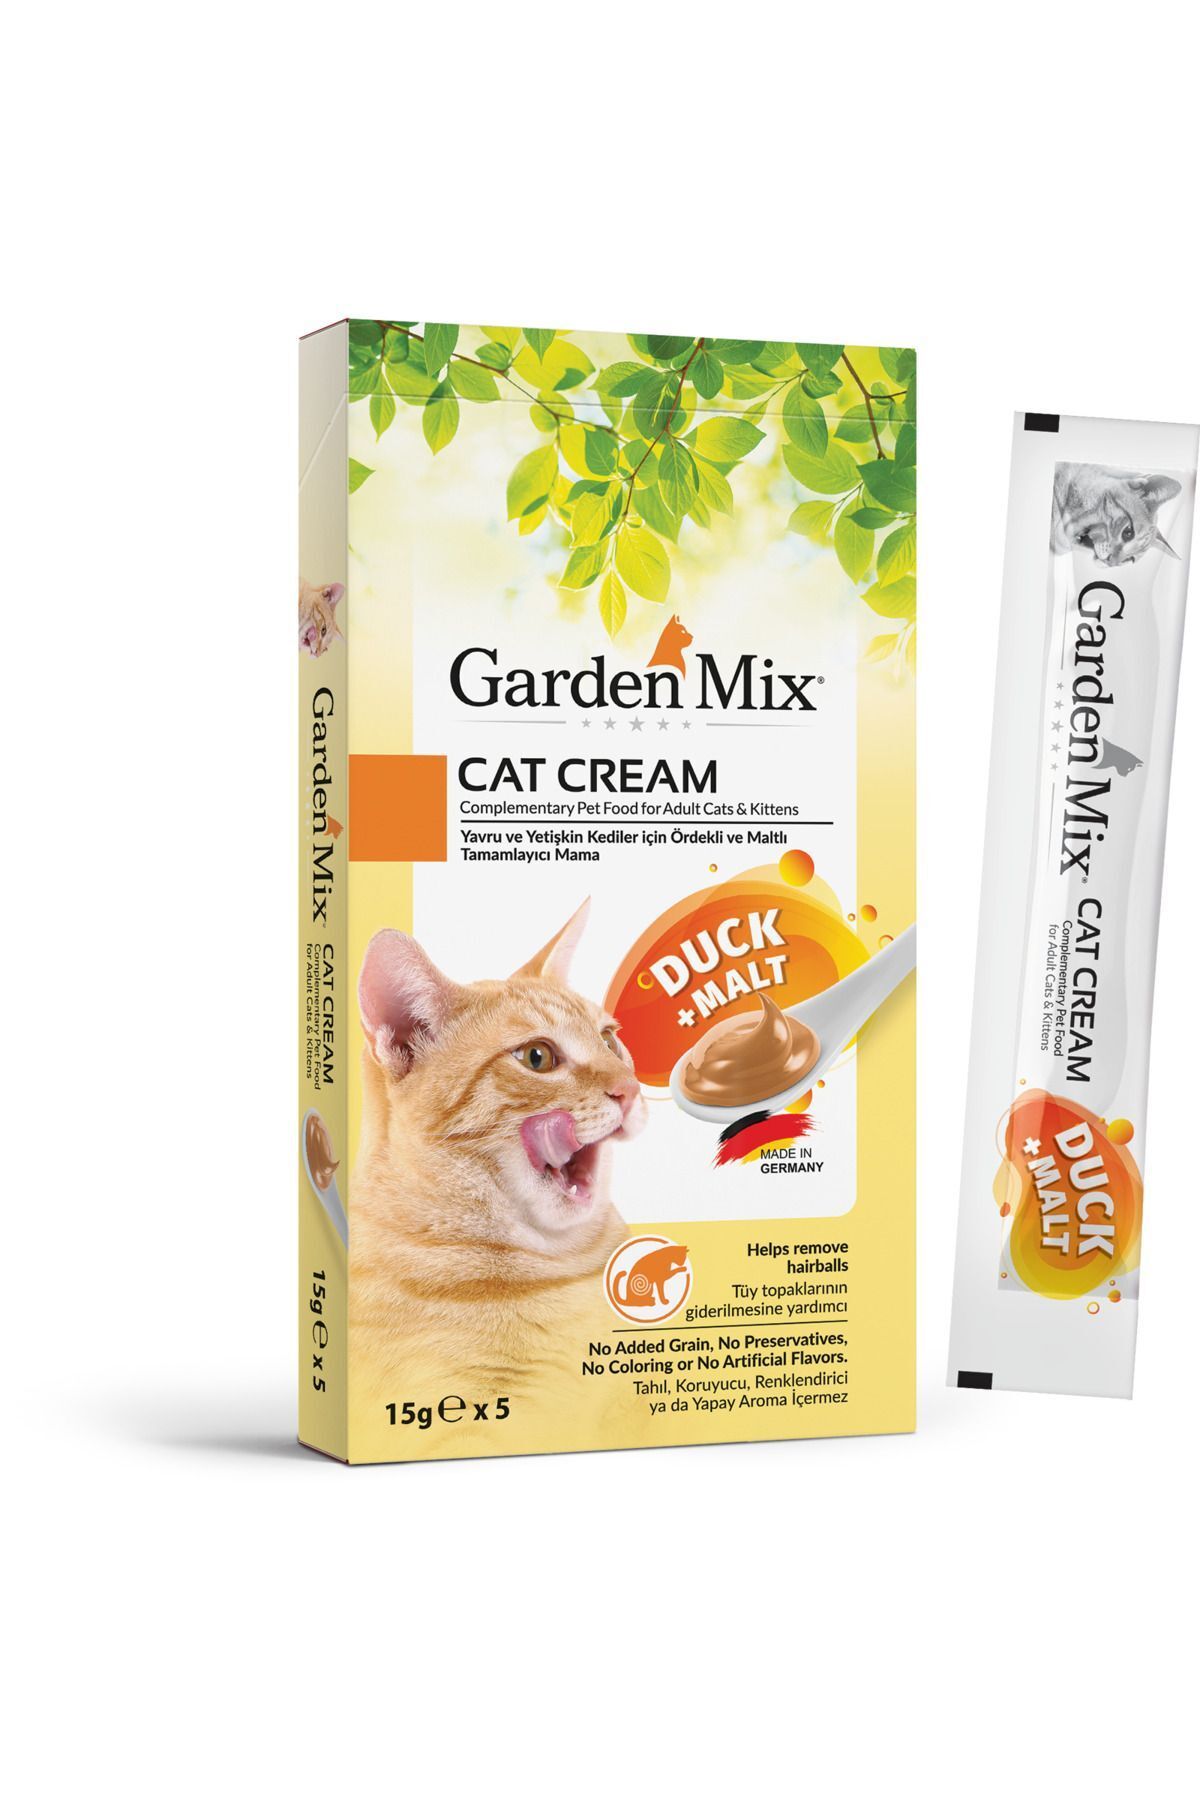 Garden Mix Kedi Kreması Ördek Malt 15grx5 Ad